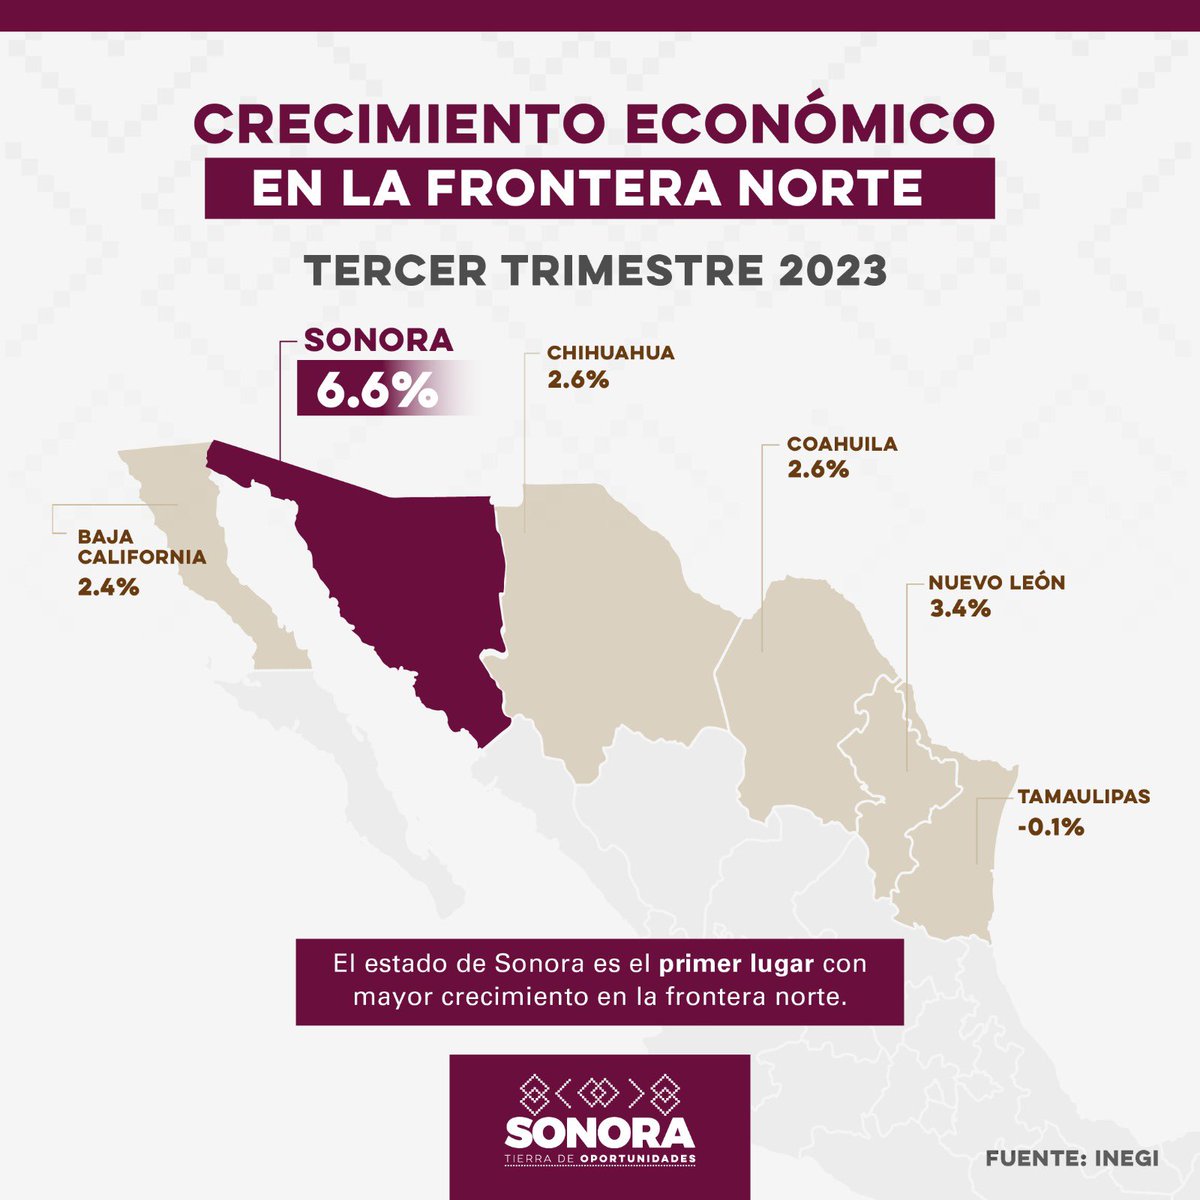 Sonora es la entidad con mayor desarrollo económico de la frontera norte del país. Con un incremento de 6.6% de en la actividad económica, nuestro estado se coloca como líder del crecimiento en favor de mejorar la calidad de vida de las y los sonorenses.